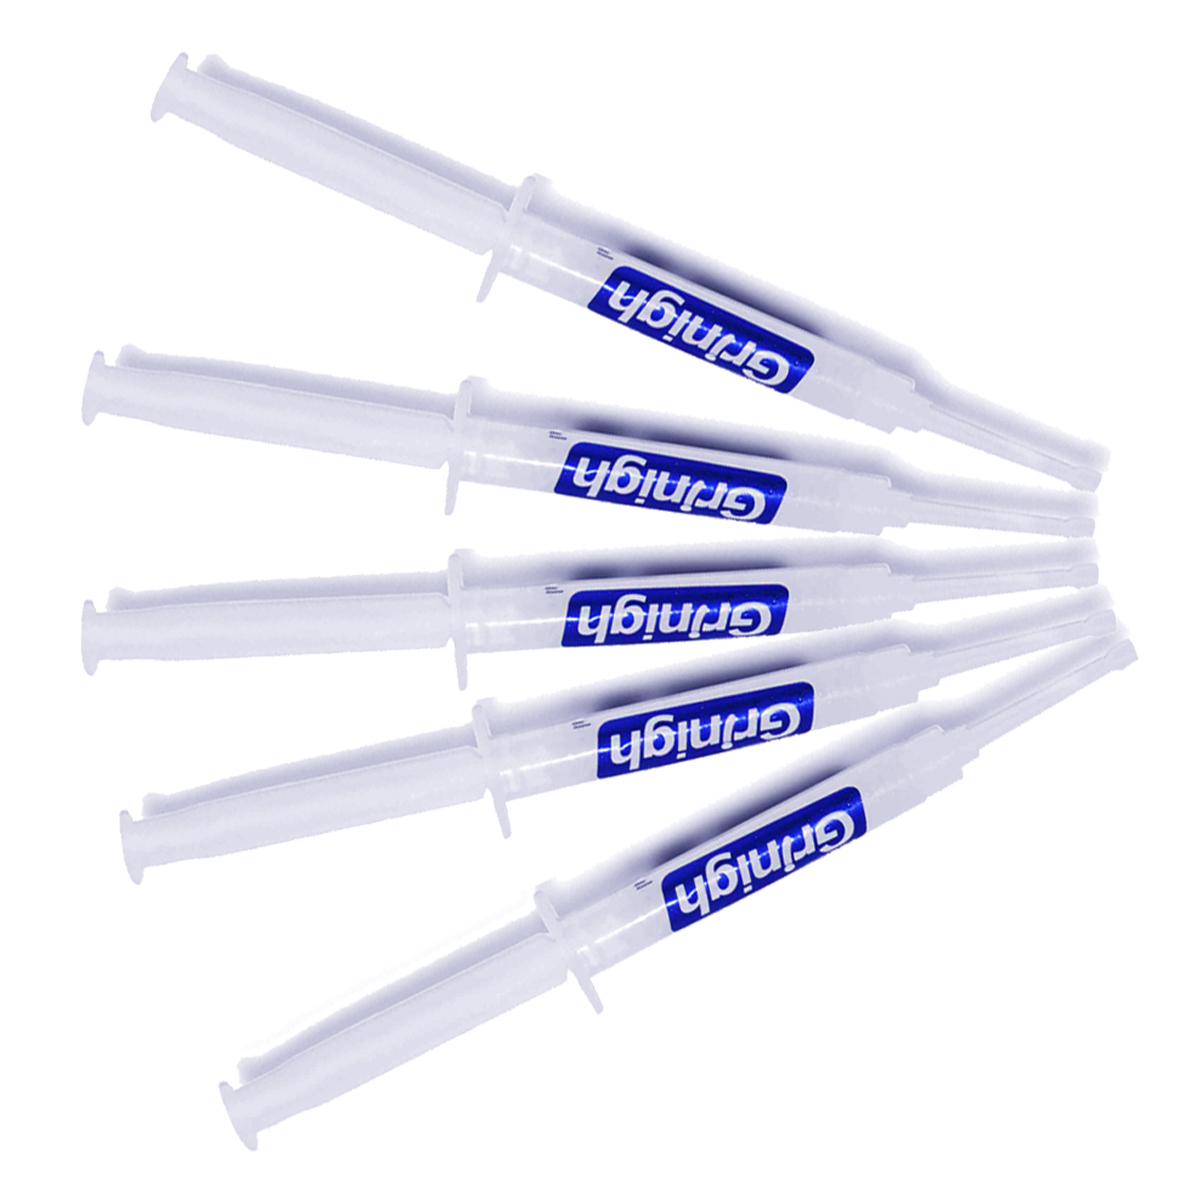 Grin365 4.5 ml Tænder Whitening Gel udskiftning sprøjter til Whitening System - Refill Kit med mere end 450 Behandlinger (35%HP eller 44% CP) pakke med 100